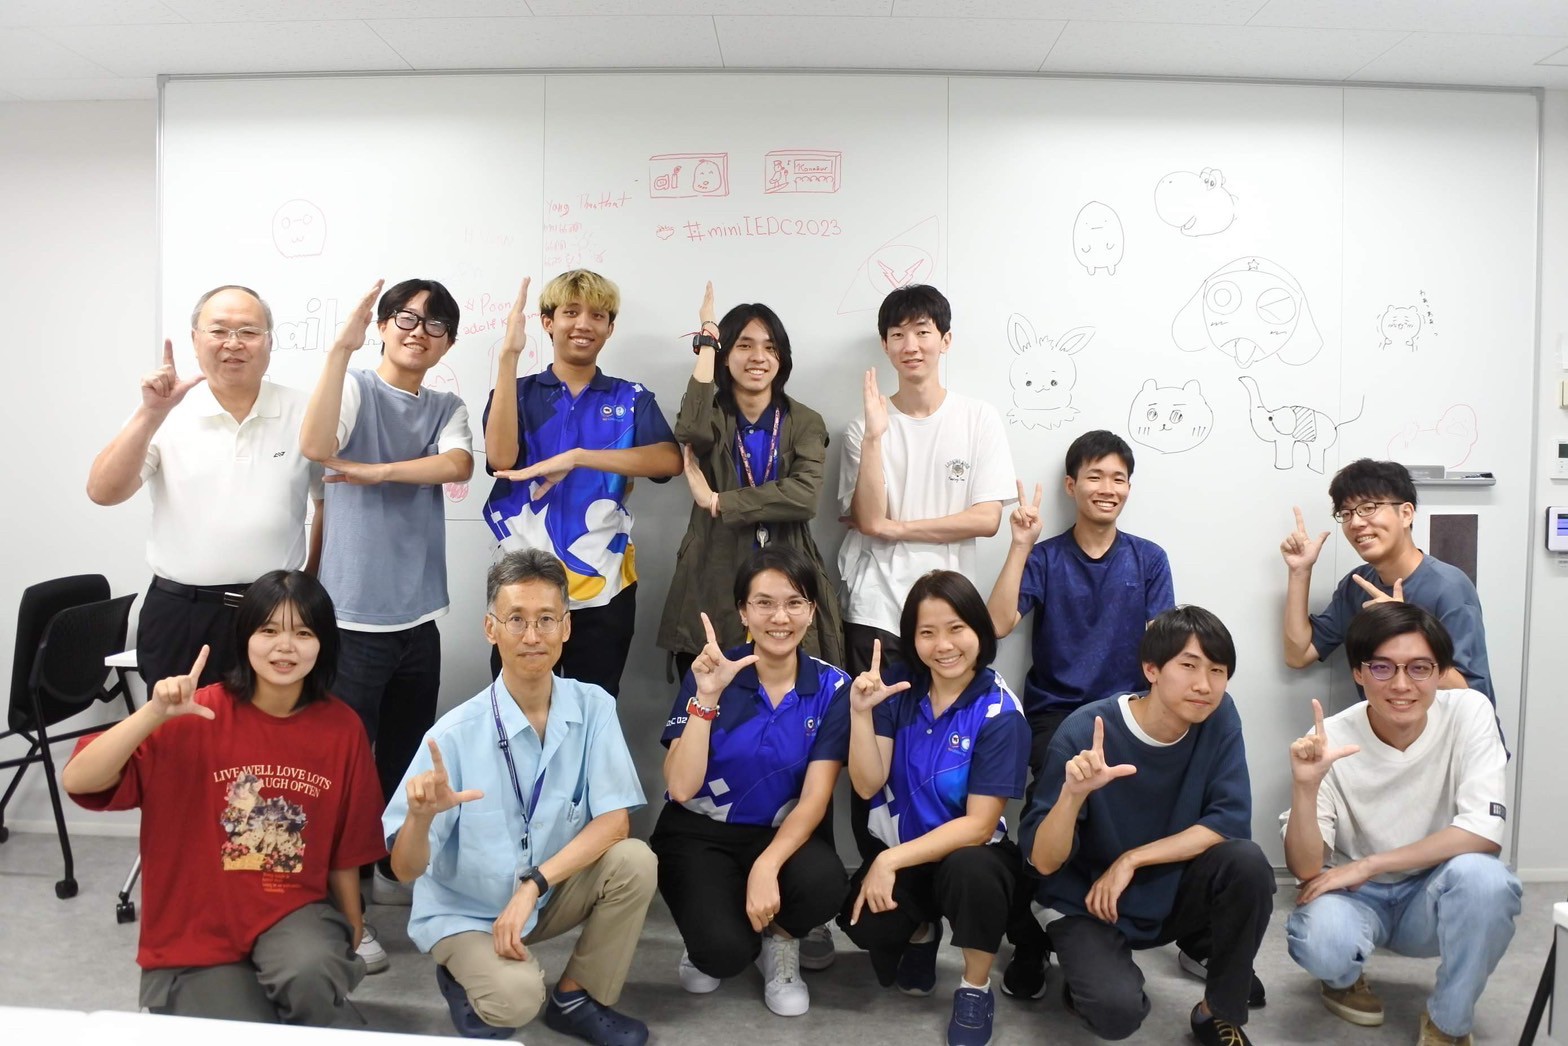 กิจกรรม Mini-IEDC ณ มหาวิทยาลัย Kindai University โอซาก้า ประเทศญี่ปุ่น